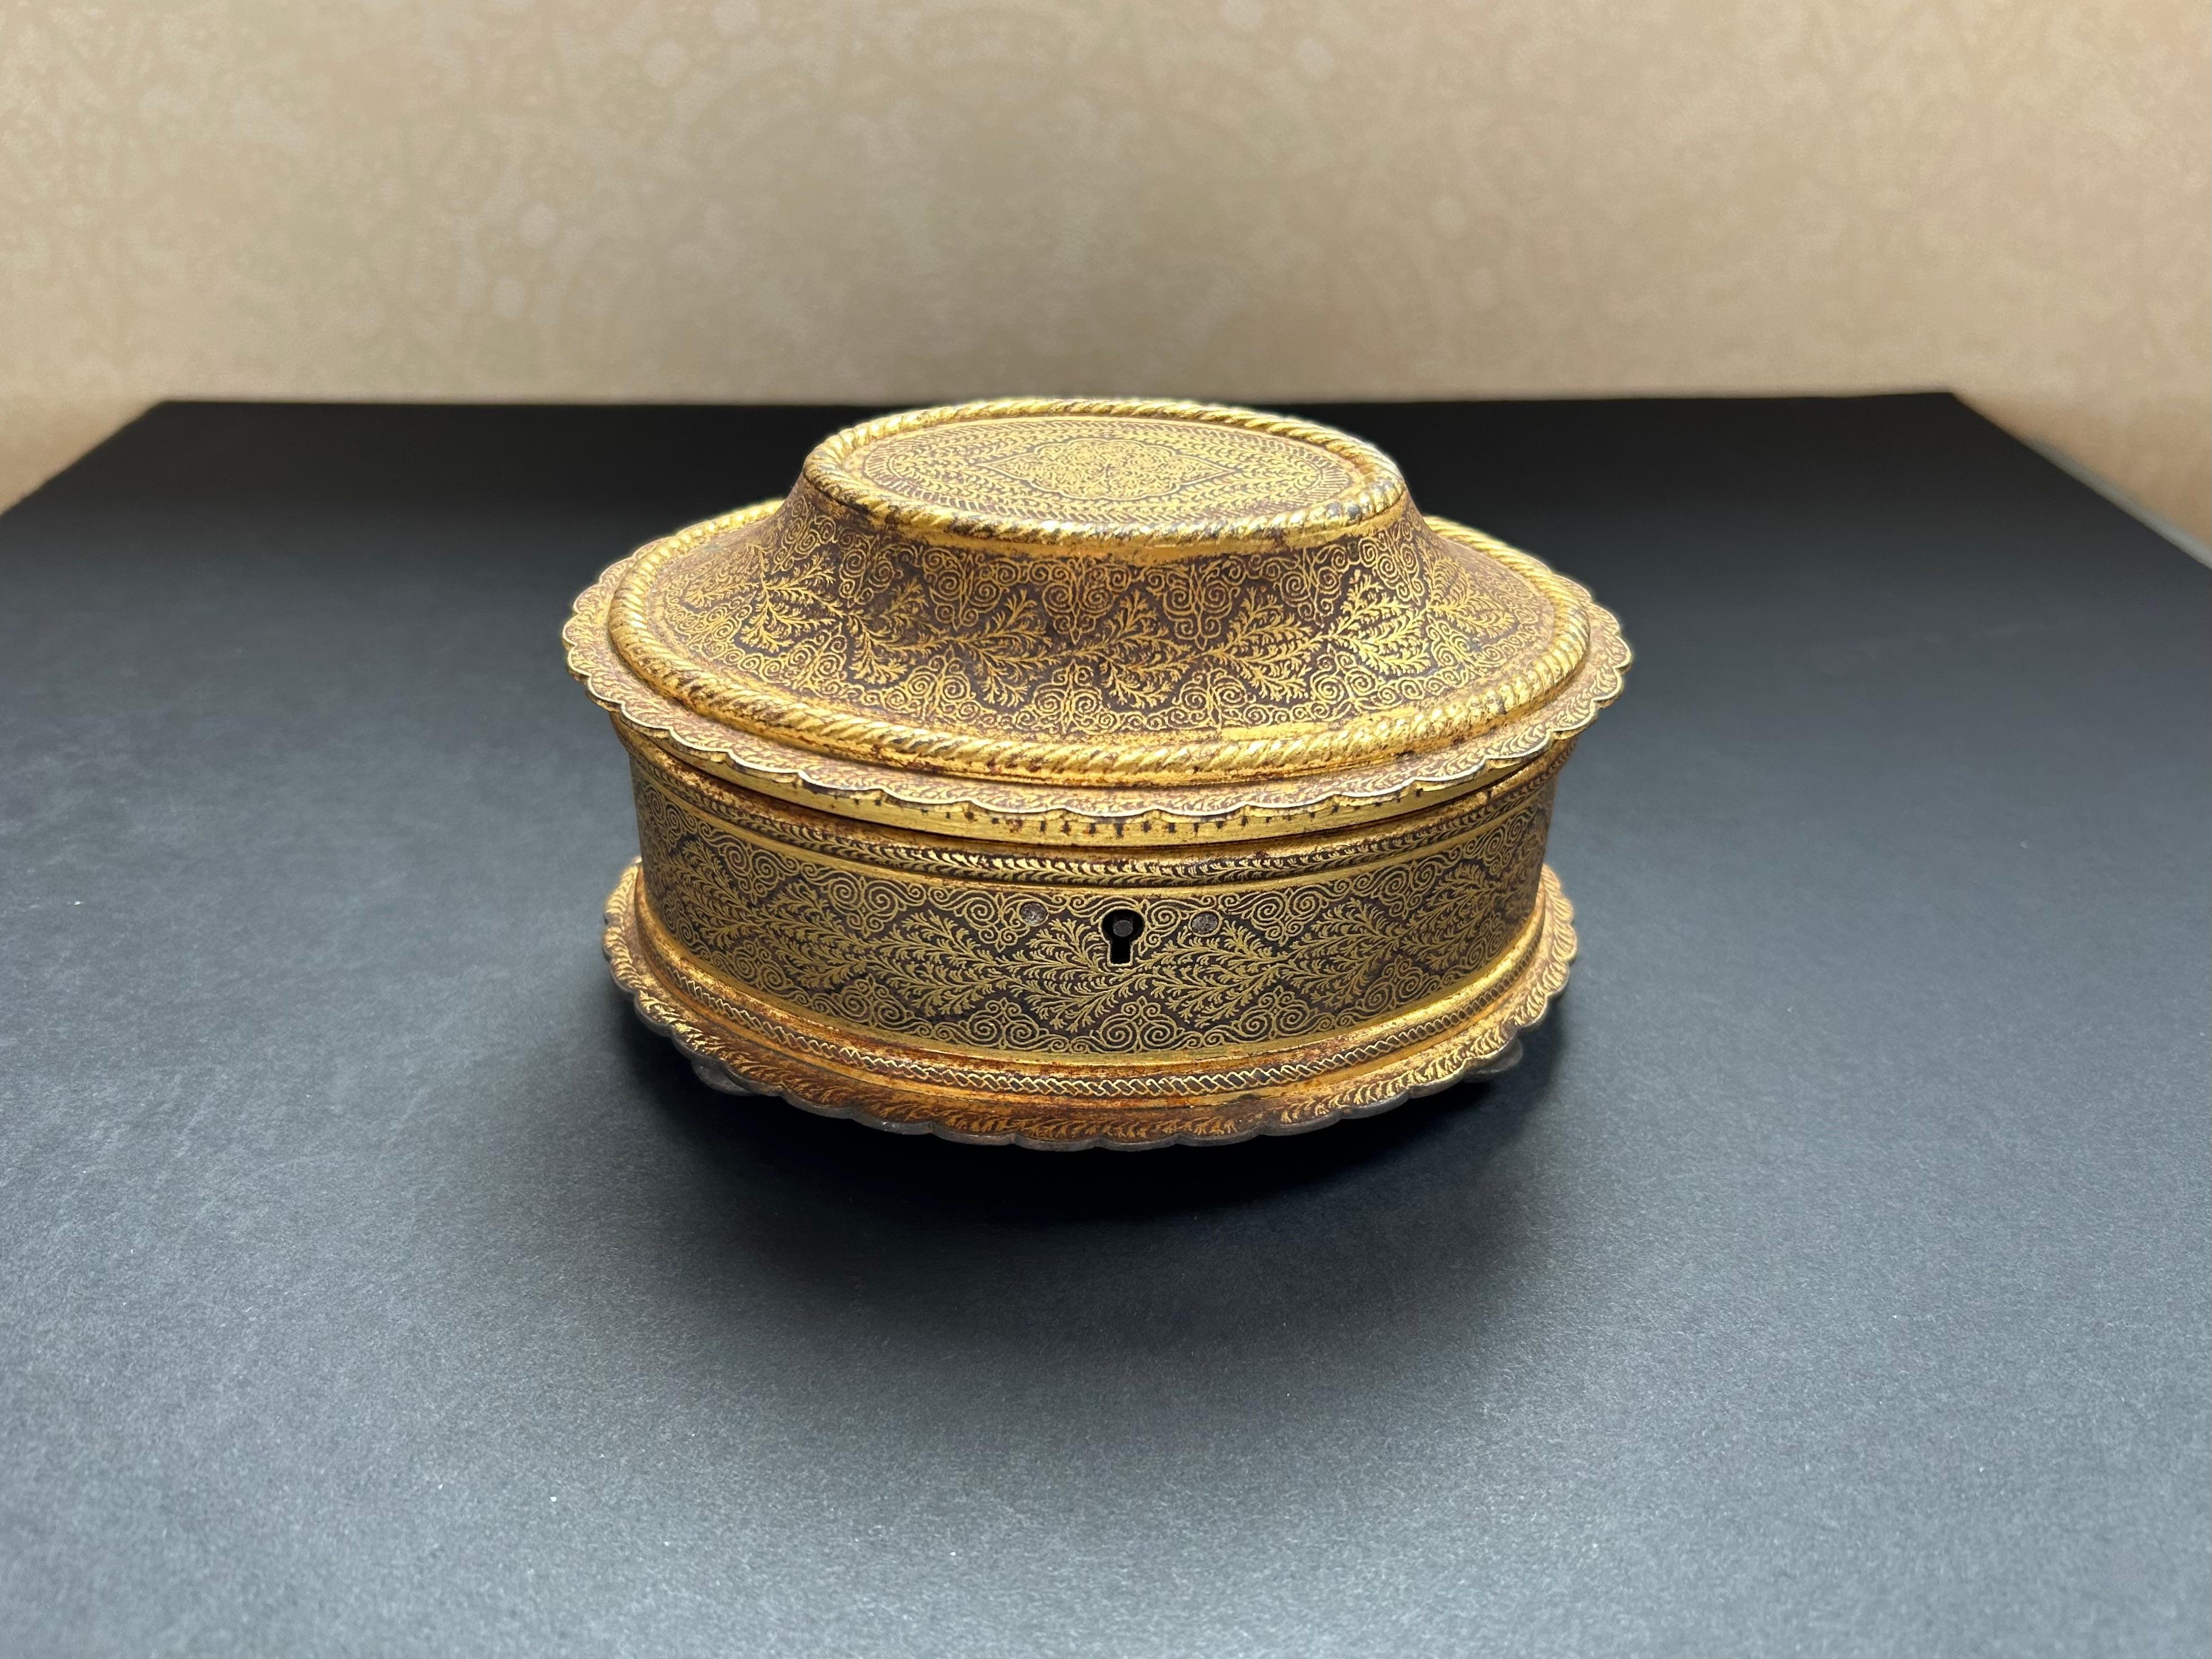 Eine exquisite indische Koftgari-Arbeitsbox oder Schmuckschatulle, um 1900, in ovaler Form. Mit sehr feinem Goldfadendekor, drei versilberten Füßen und einem versilberten Sockel. Der Deckel lässt sich öffnen und gibt den Blick auf ein abgenutztes